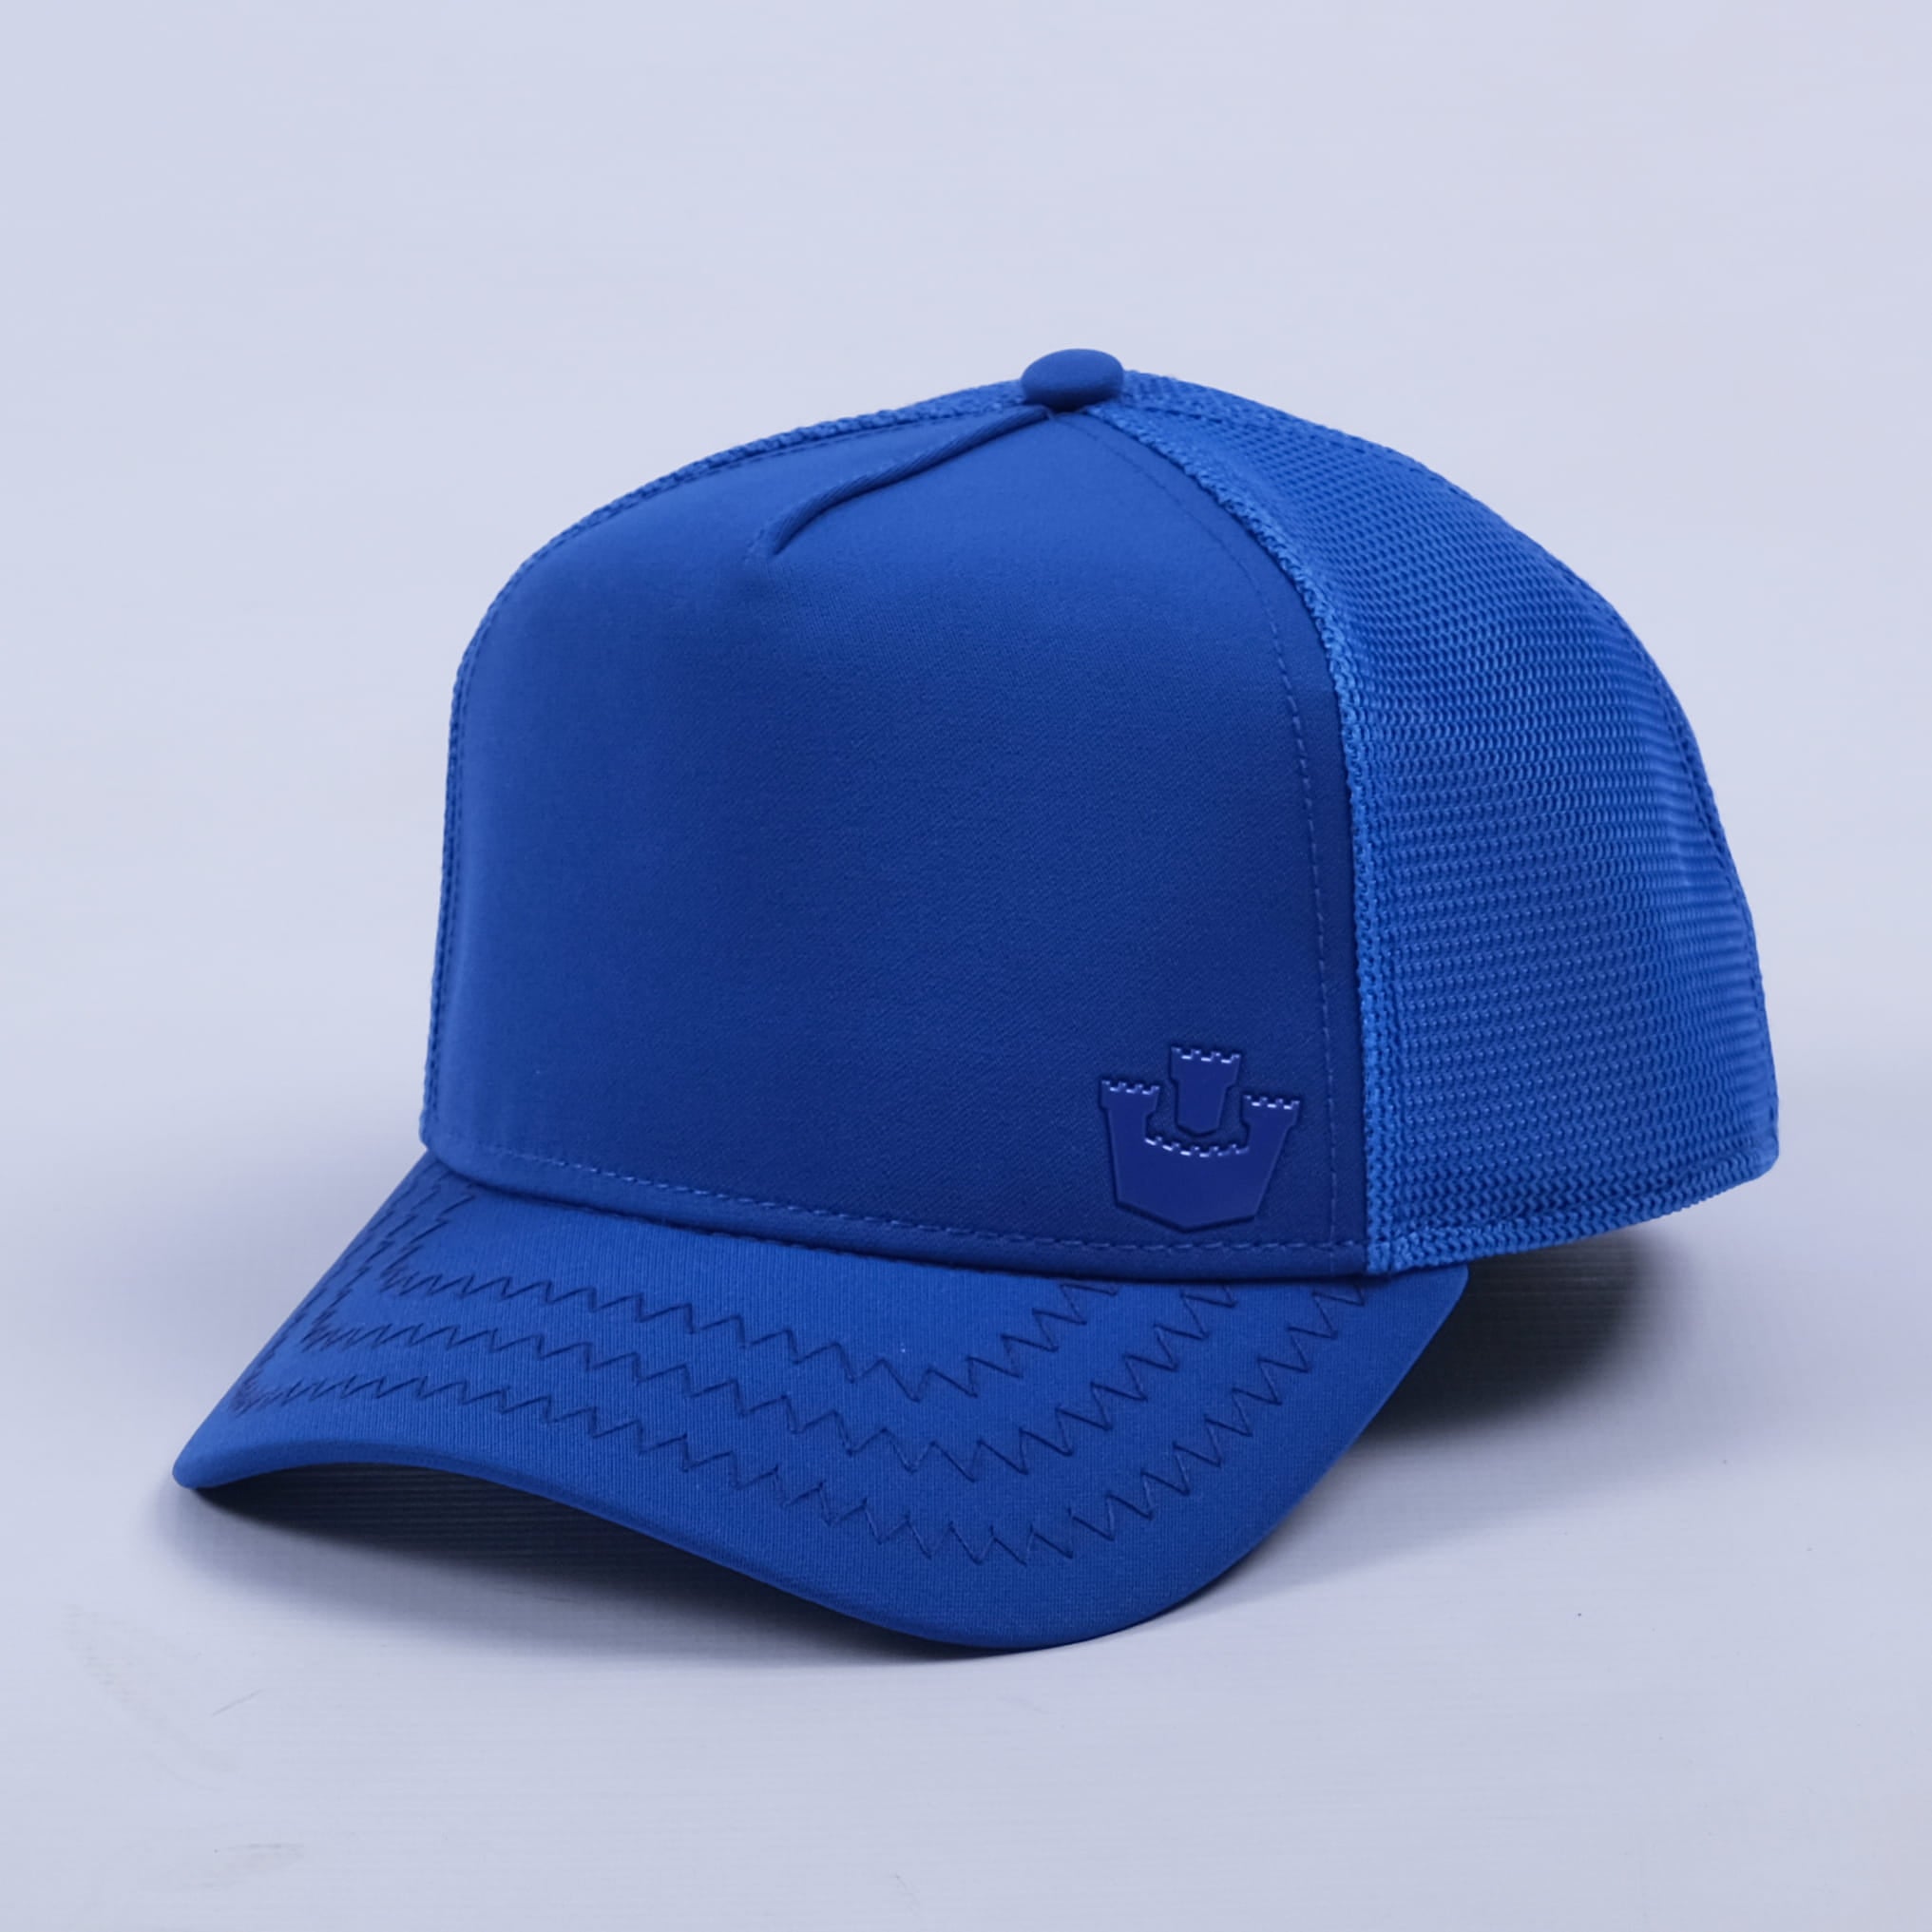 Gateway Trucker Hat (Blue)